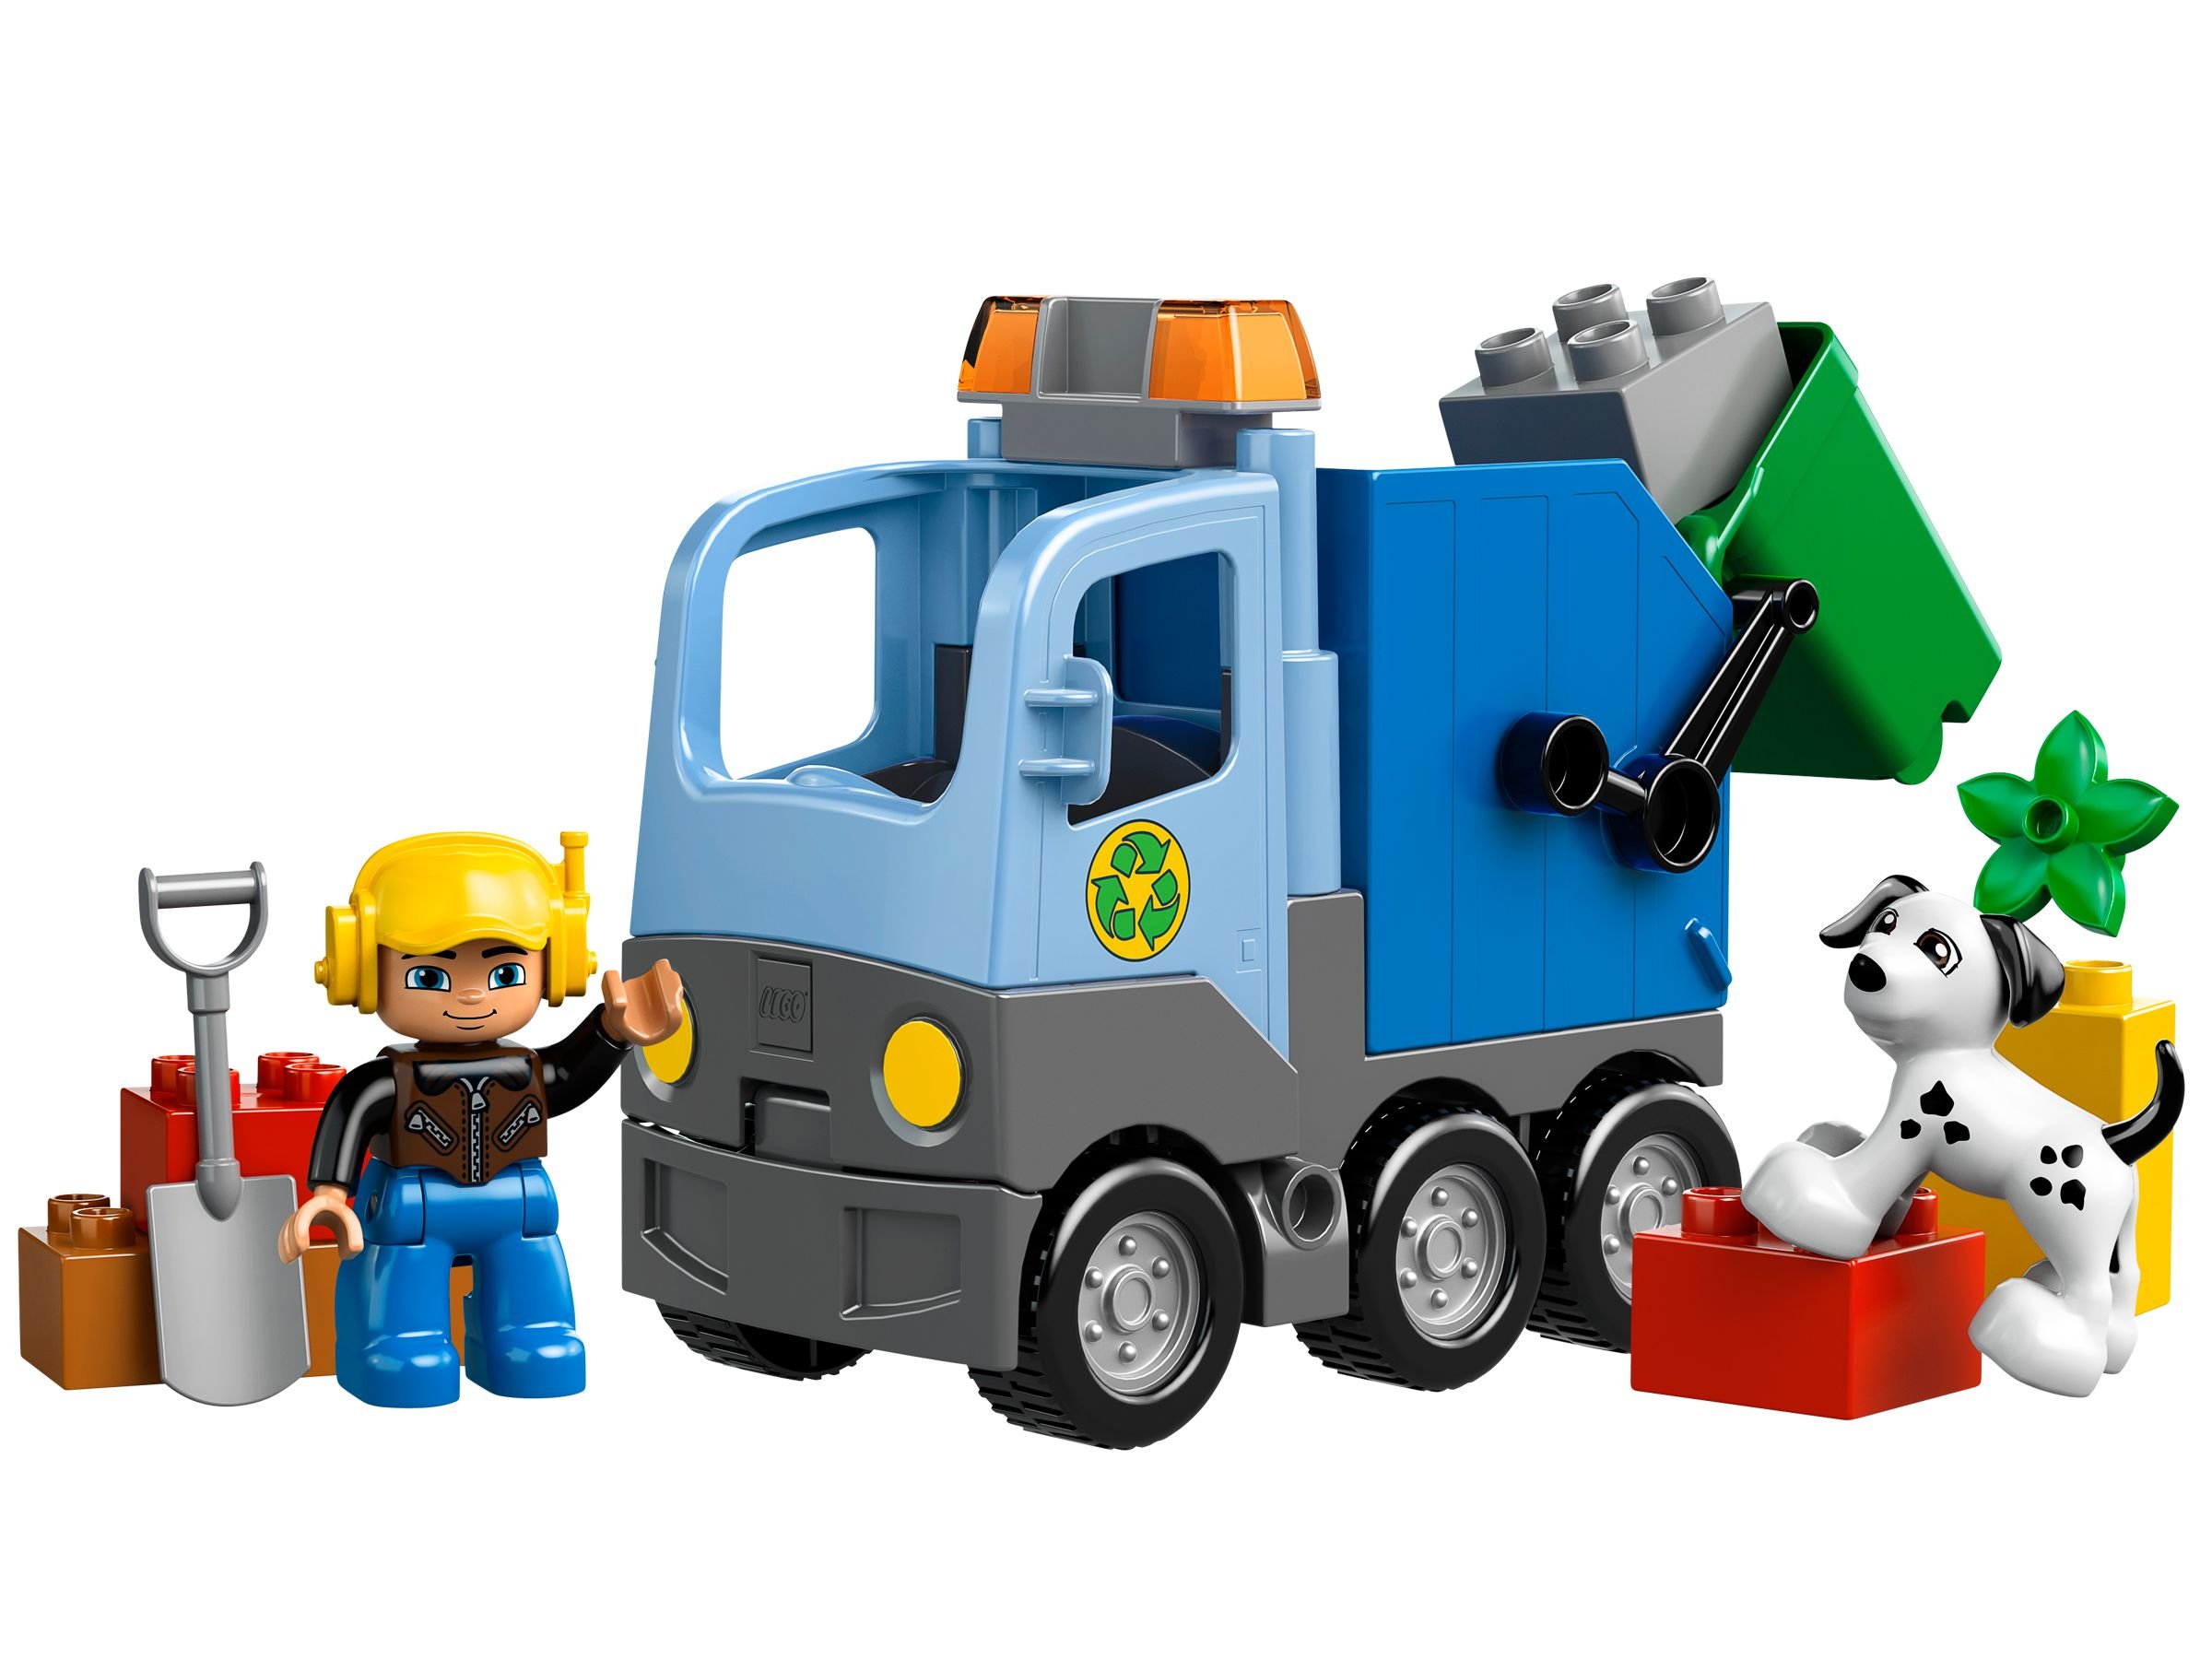 LEGO Duplo 10519 Müllabfuhr LEGO_10519.jpg